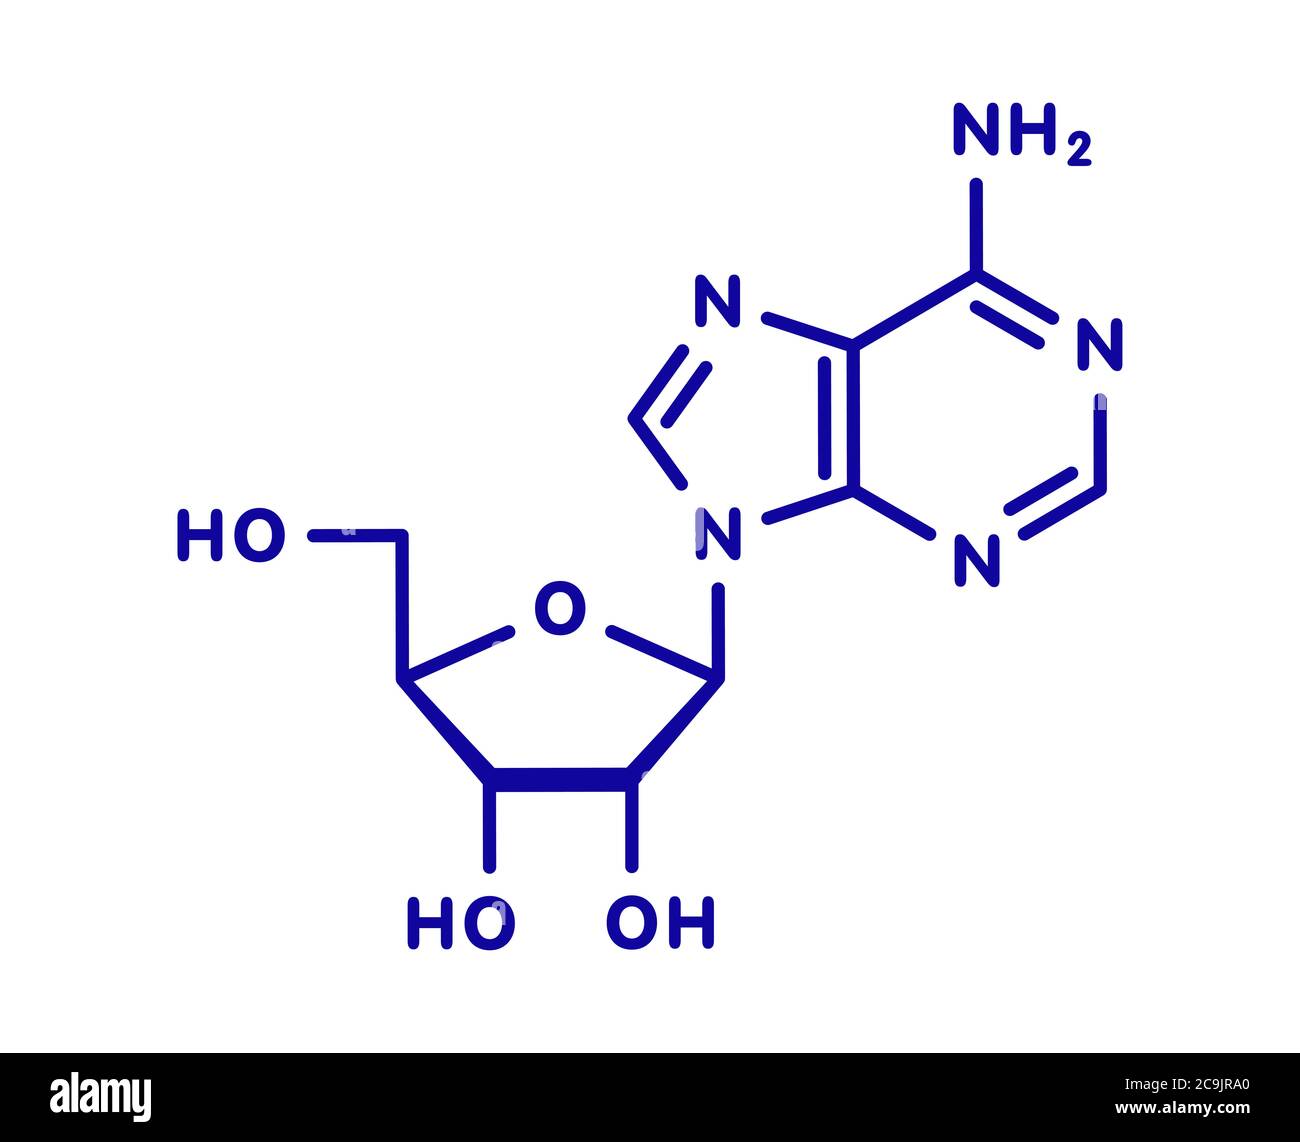 Molécule de nucléoside d'adénosine (ADO) purine. Composante importante de l'ATP, de l'ADP, du camp et de l'ARN. Également utilisé comme médicament. Formule squelette bleu sur fond blanc Banque D'Images